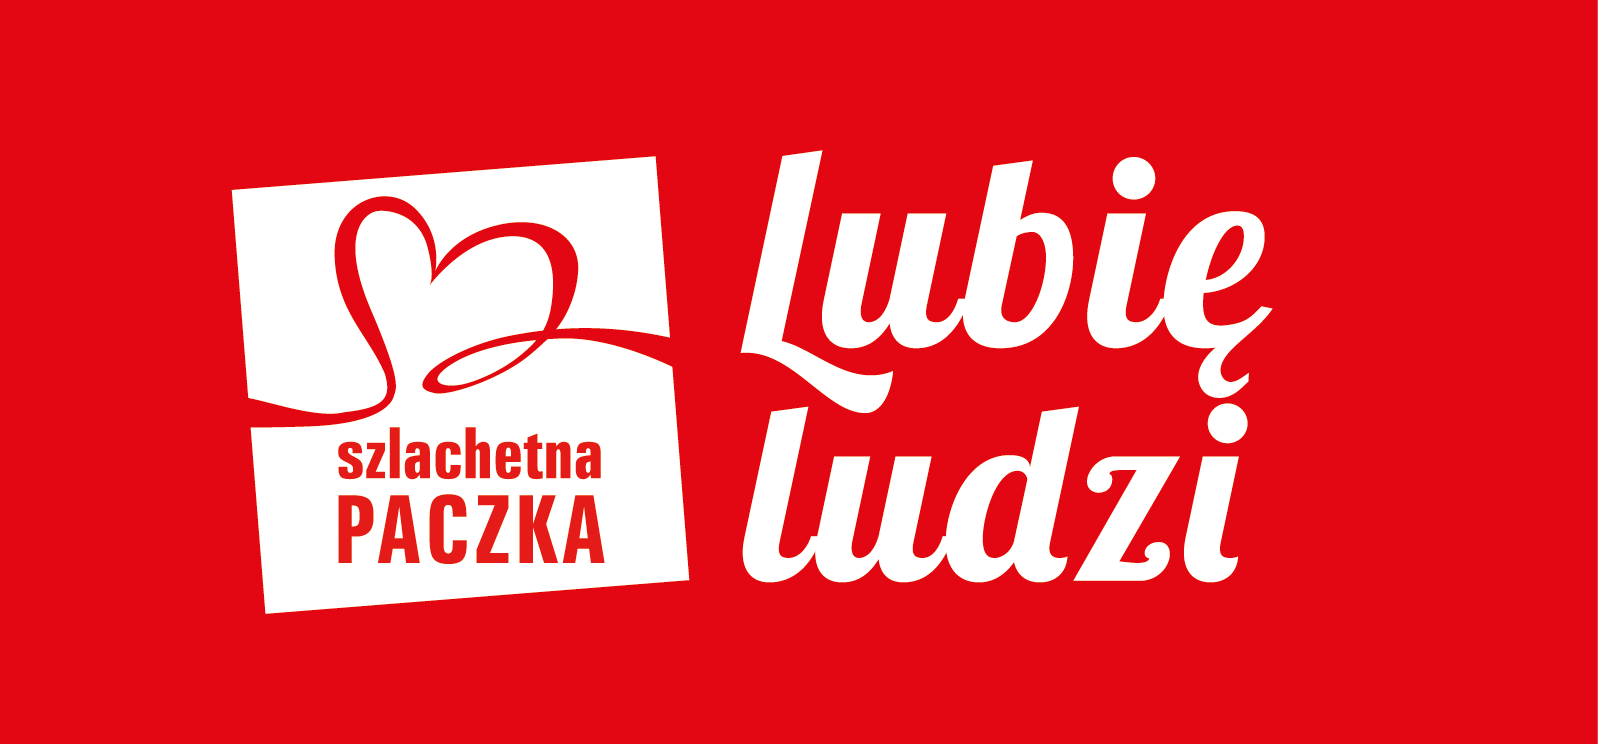 Logotyp Szlachetnej Paczki